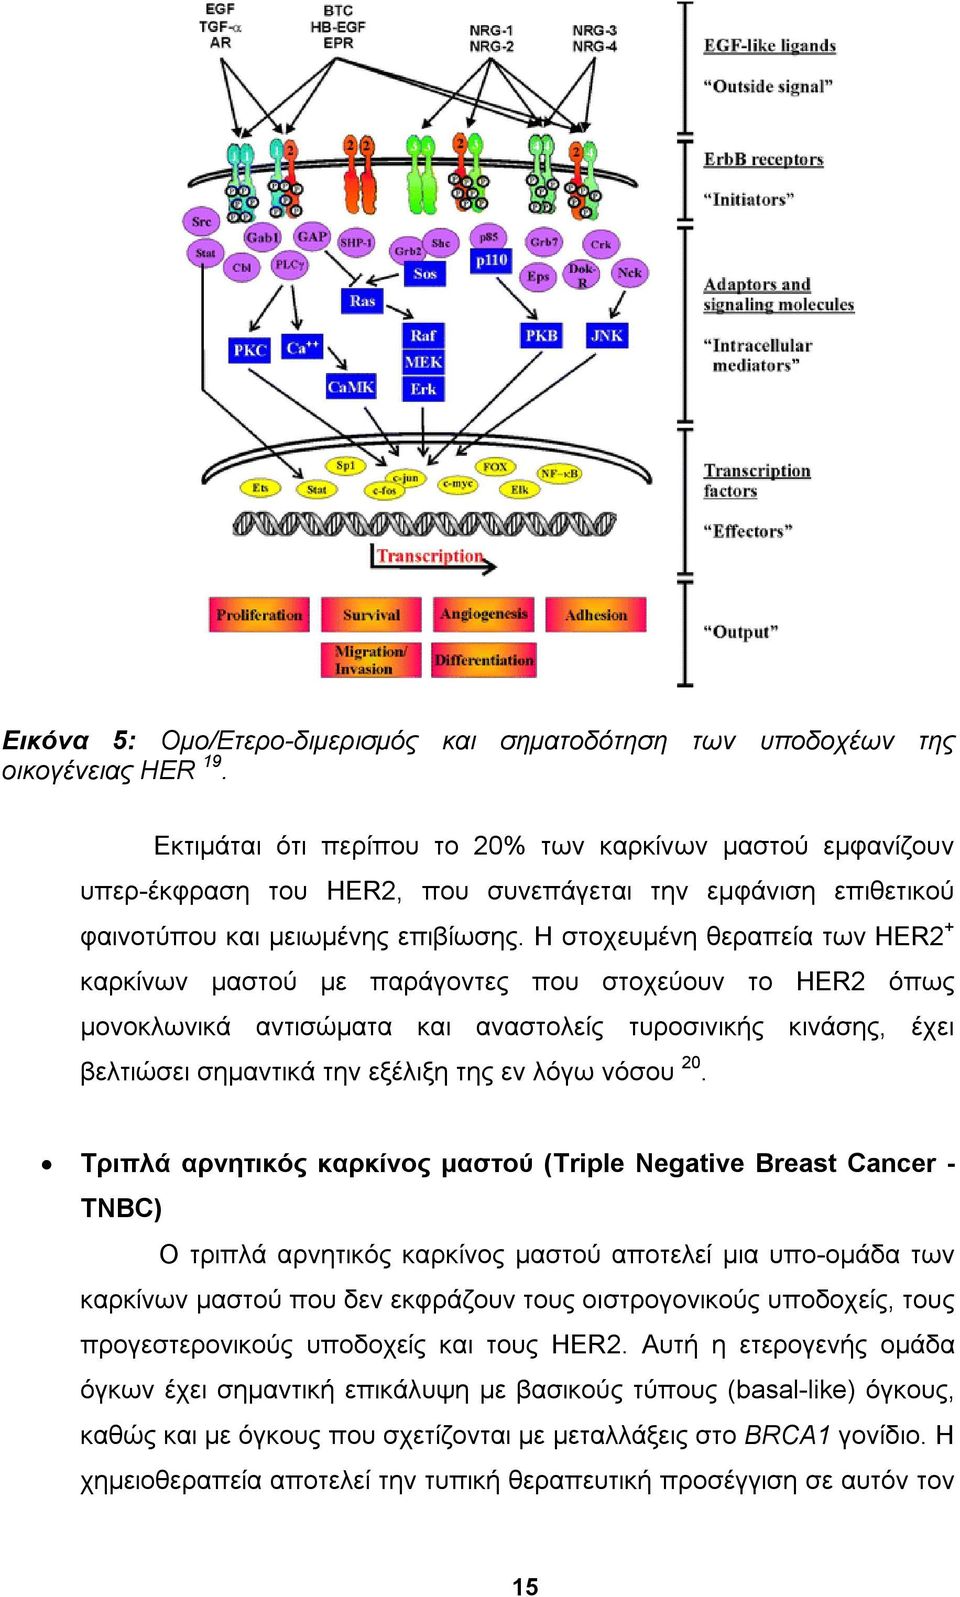 Η στοχευμένη θεραπεία των HER2 + καρκίνων μαστού με παράγοντες που στοχεύουν το HER2 όπως μονοκλωνικά αντισώματα και αναστολείς τυροσινικής κινάσης, έχει βελτιώσει σημαντικά την εξέλιξη της εν λόγω